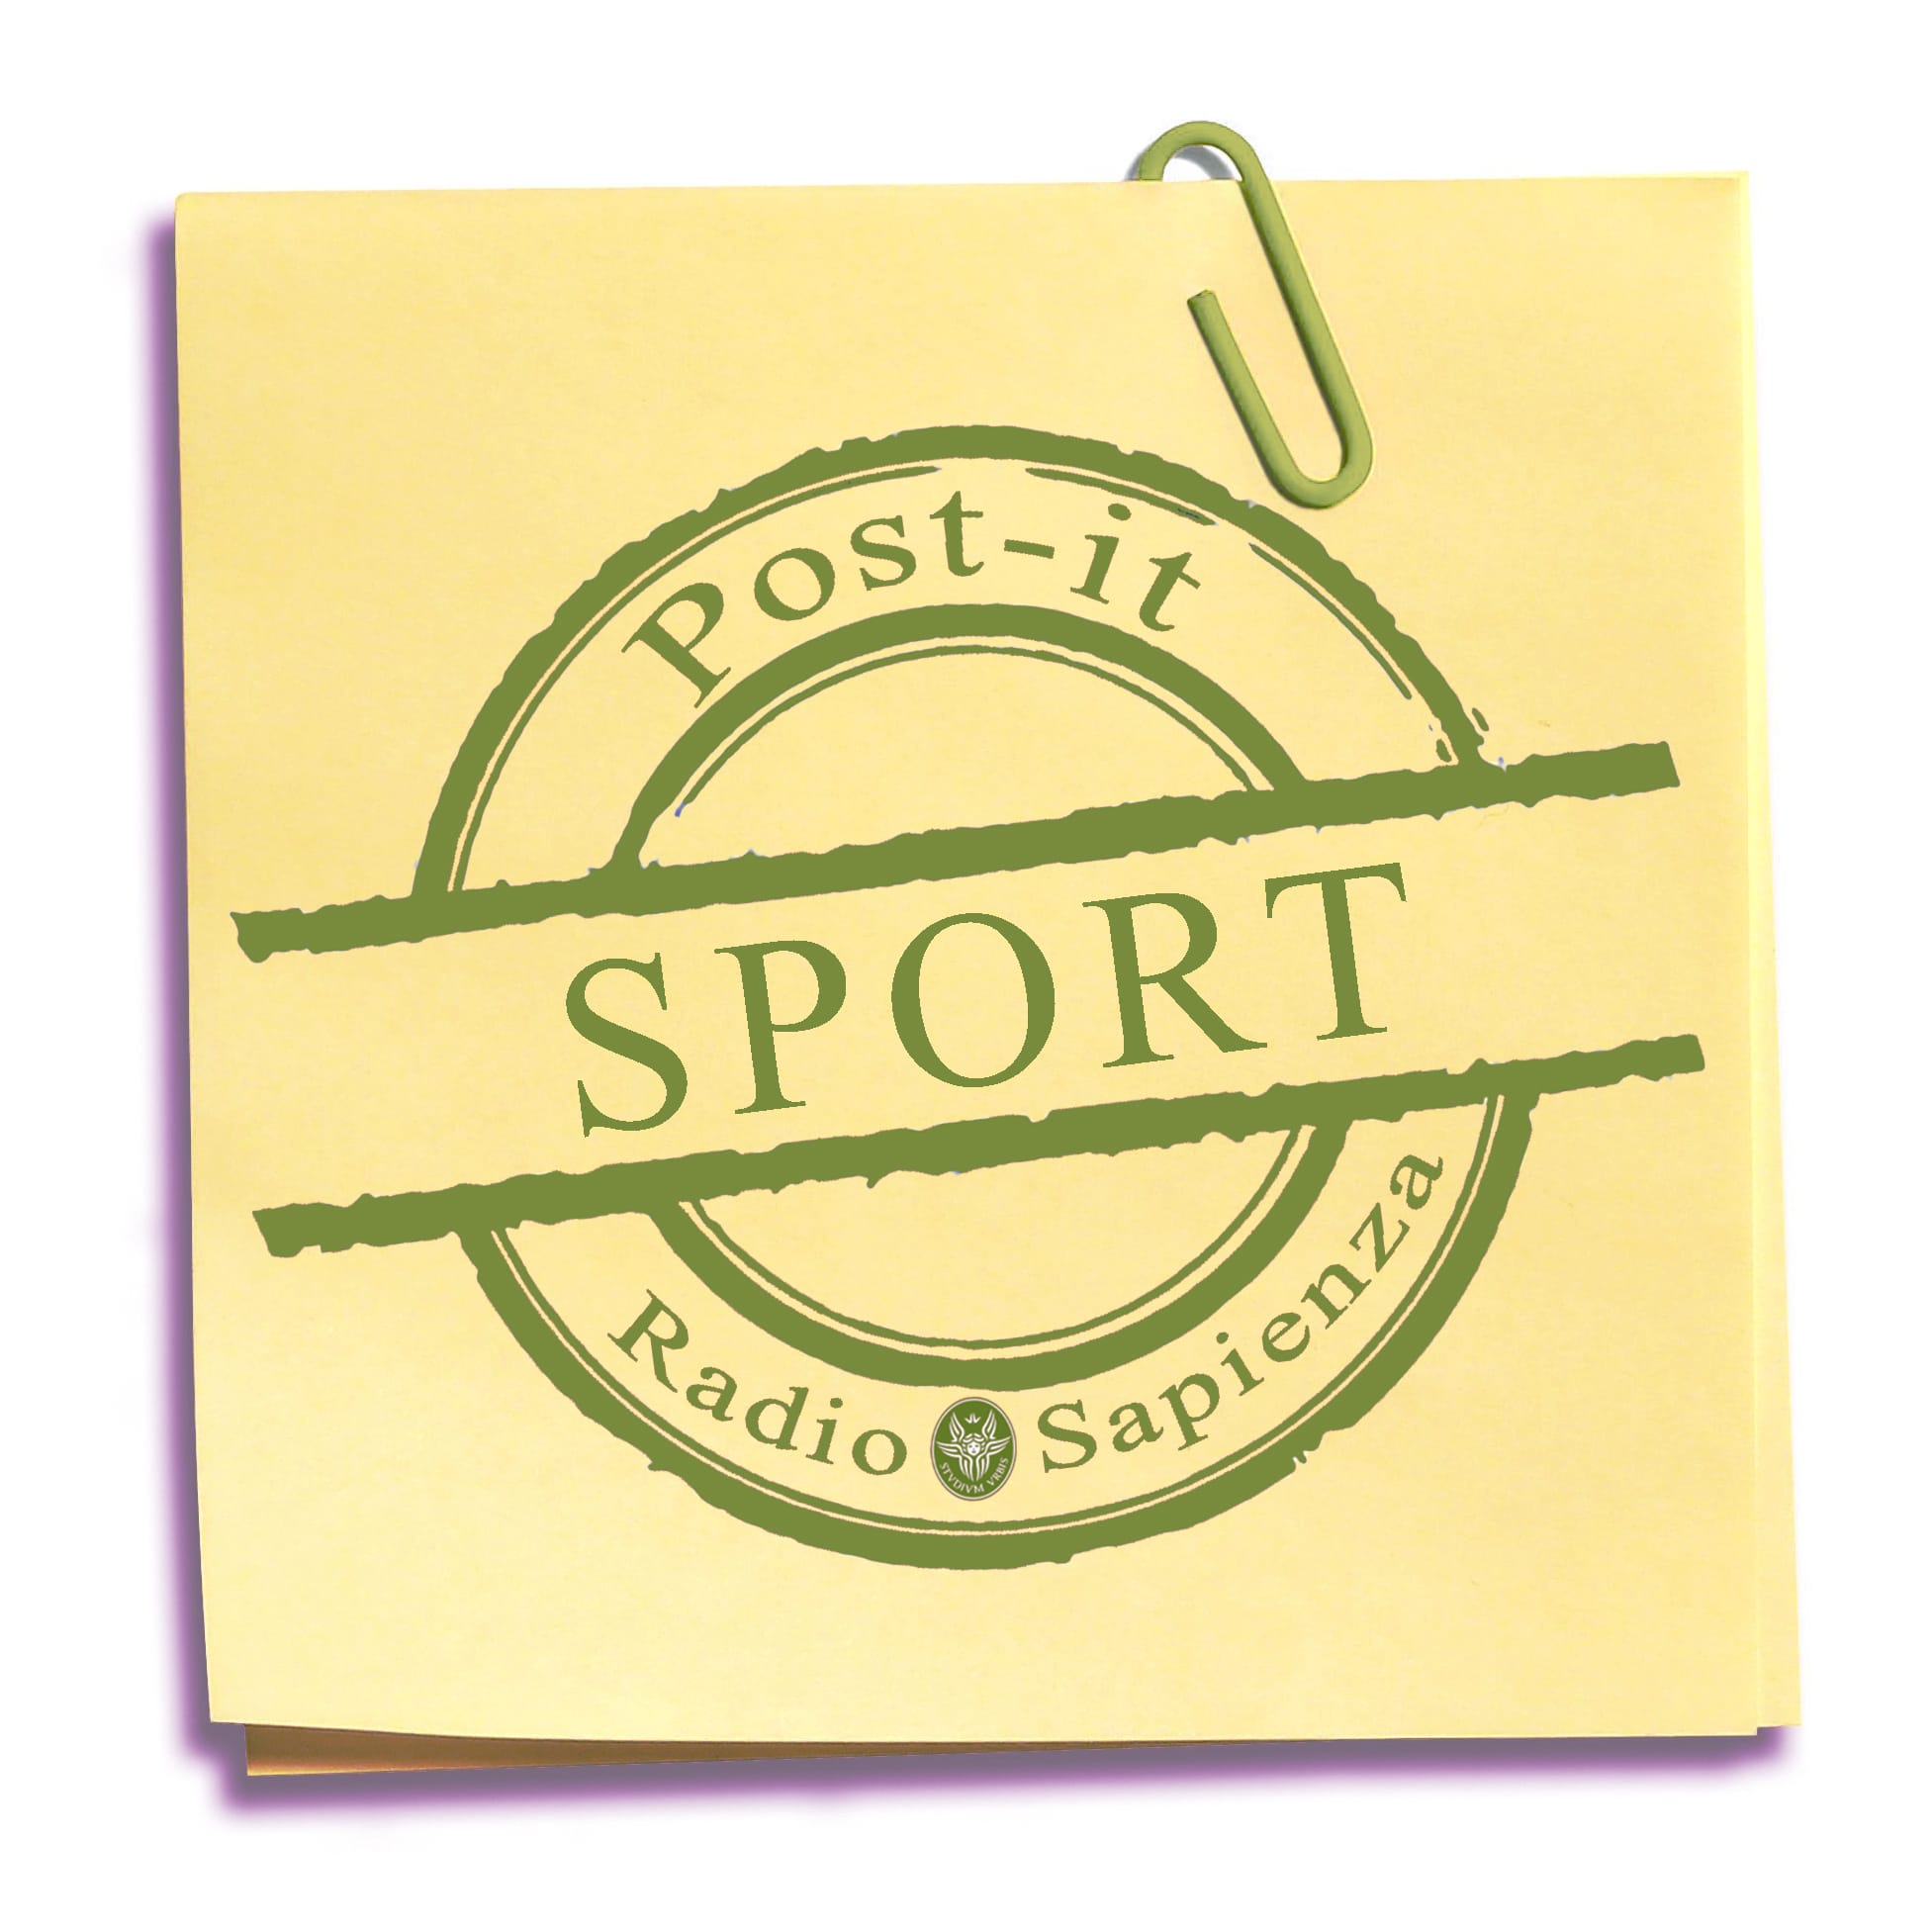 Post-it Sport – Martedì 20 aprile 2021